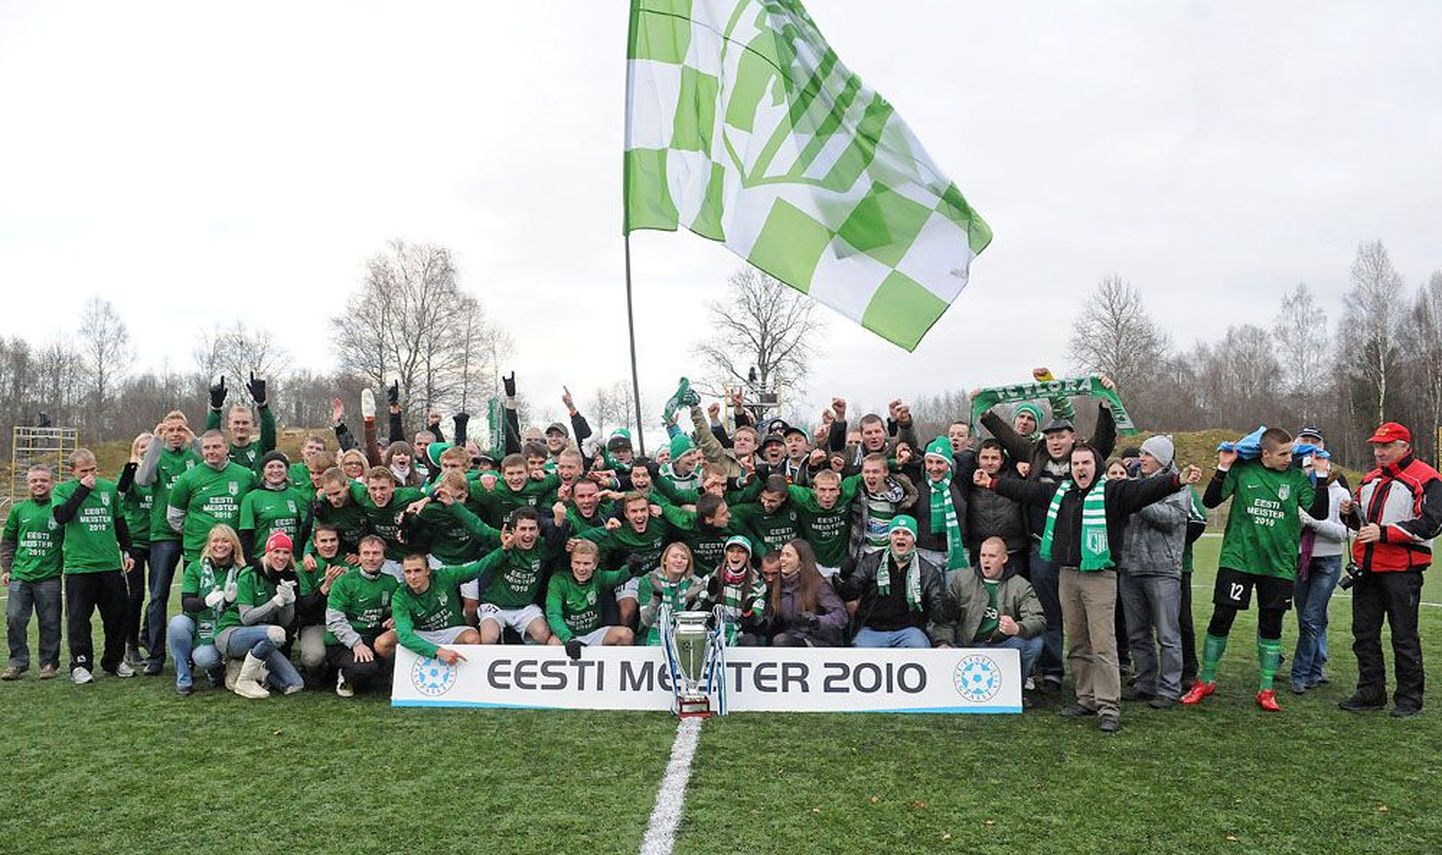 Клуб "Флора" выиграл в 2010 году титул чемпиона Эстонии.